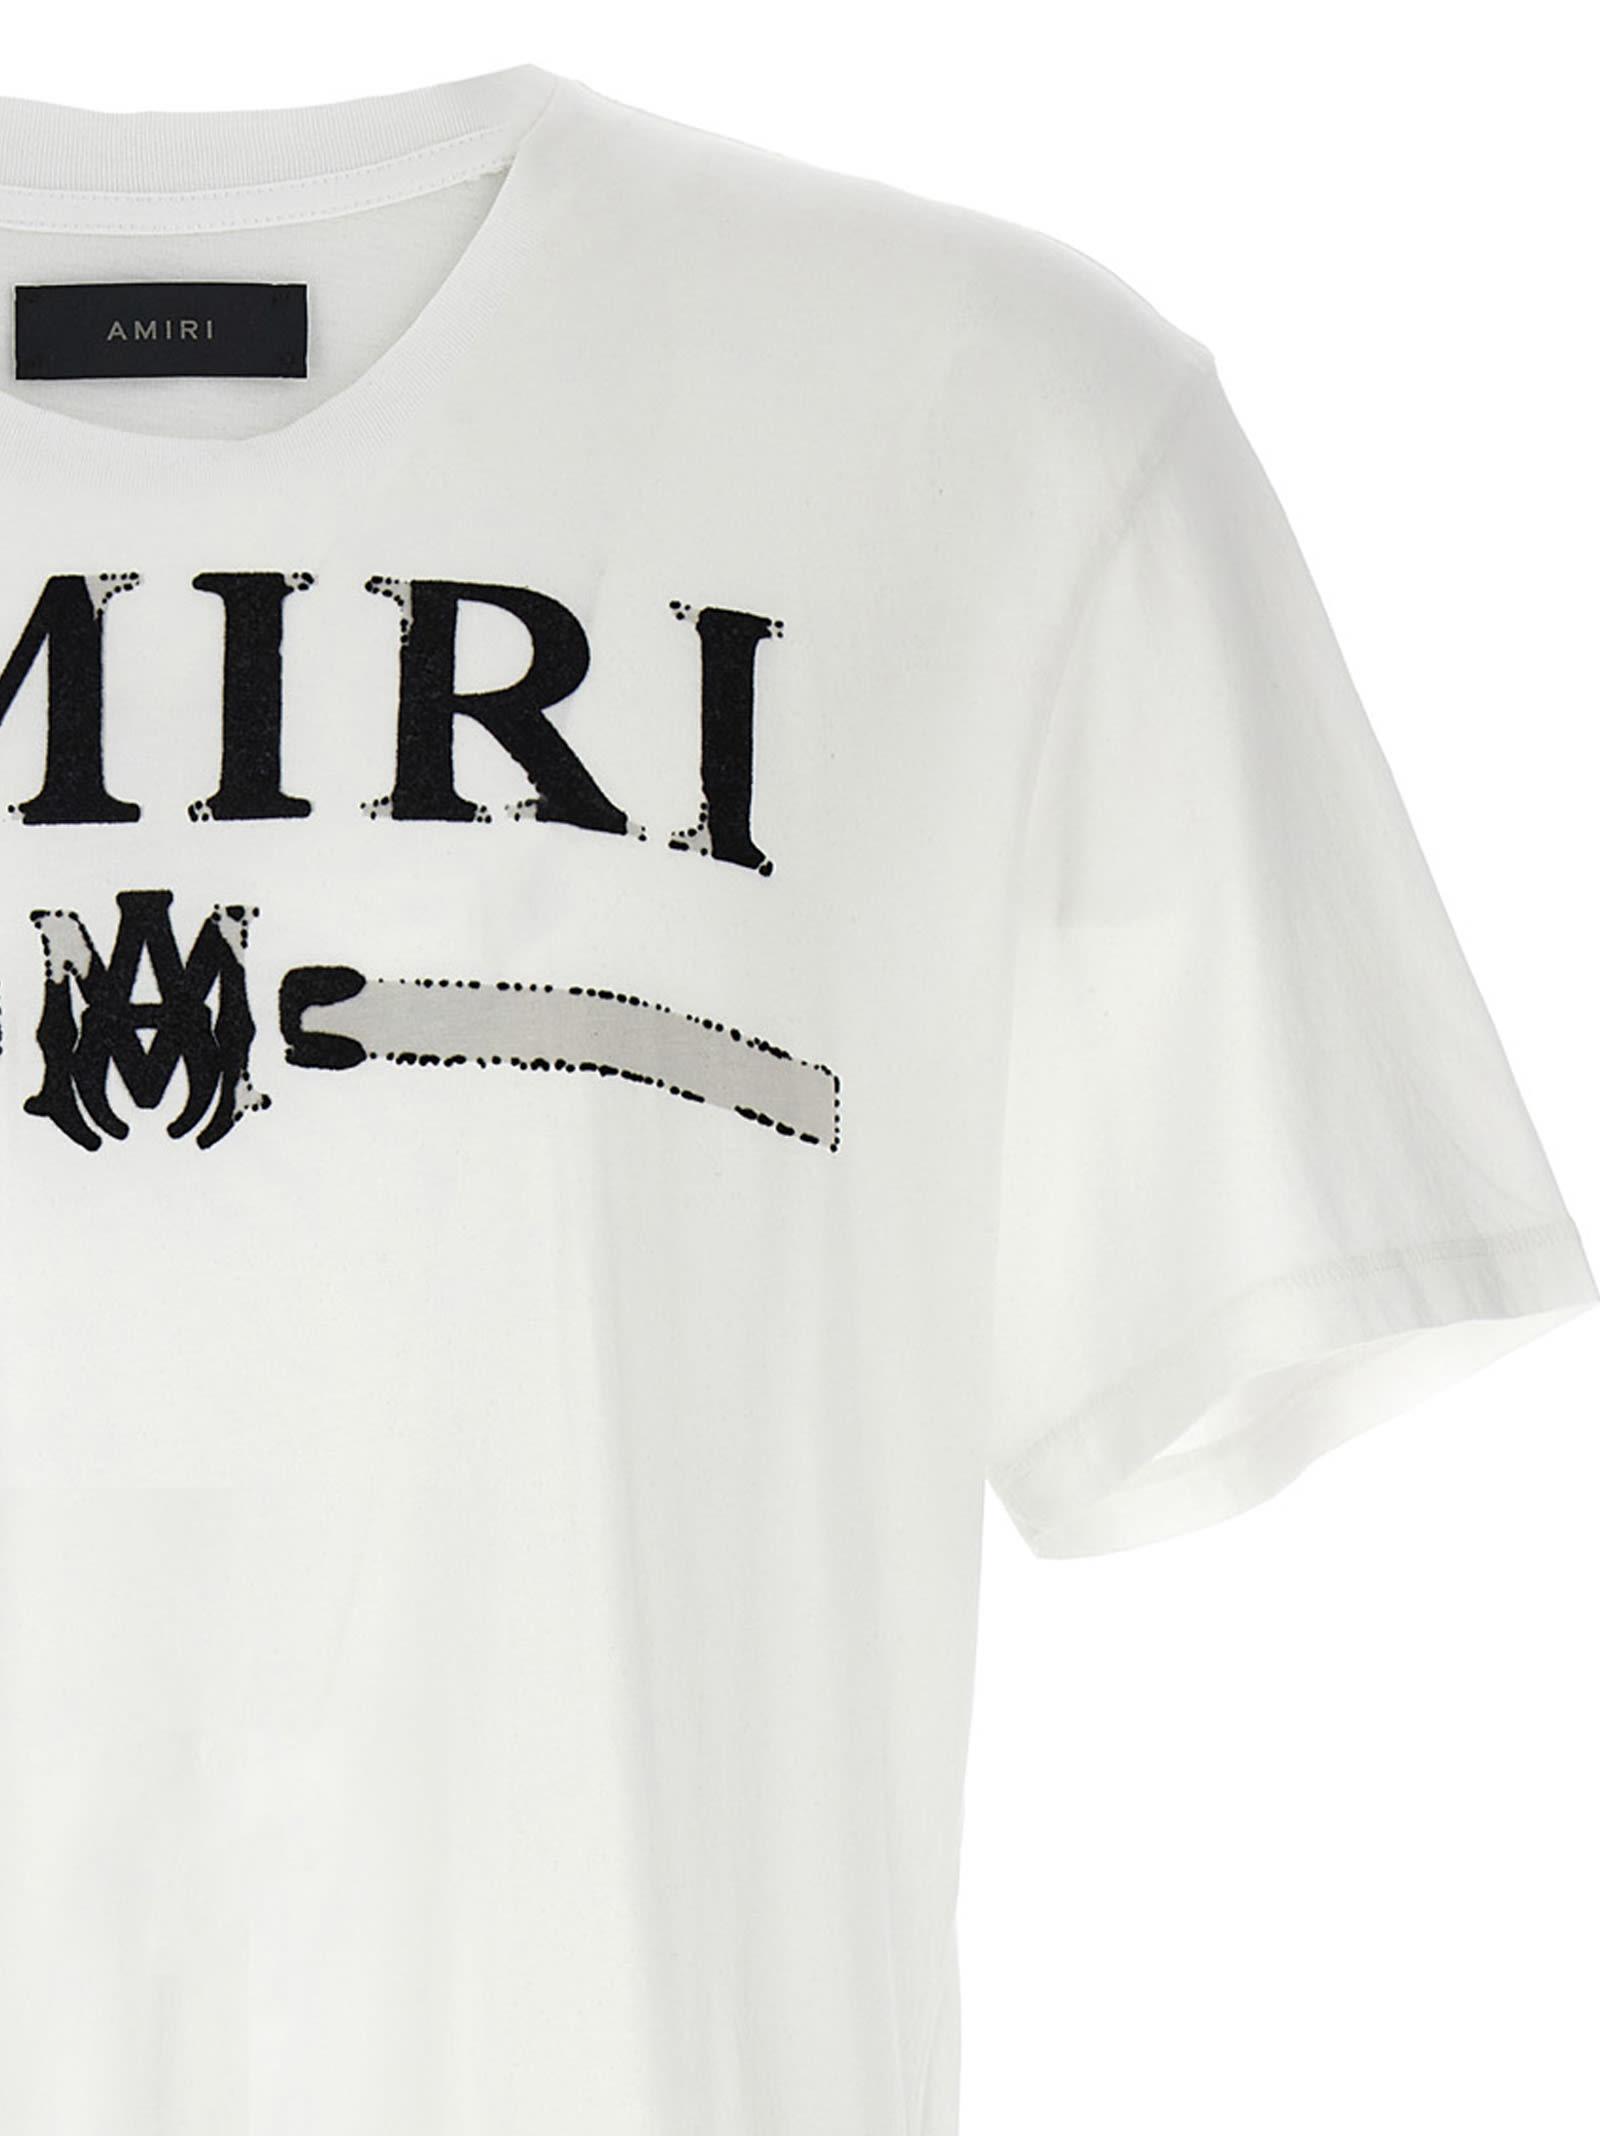 AMIRI アミリ M.A. Bar MAバー 半袖 Tシャツ ホワイト S